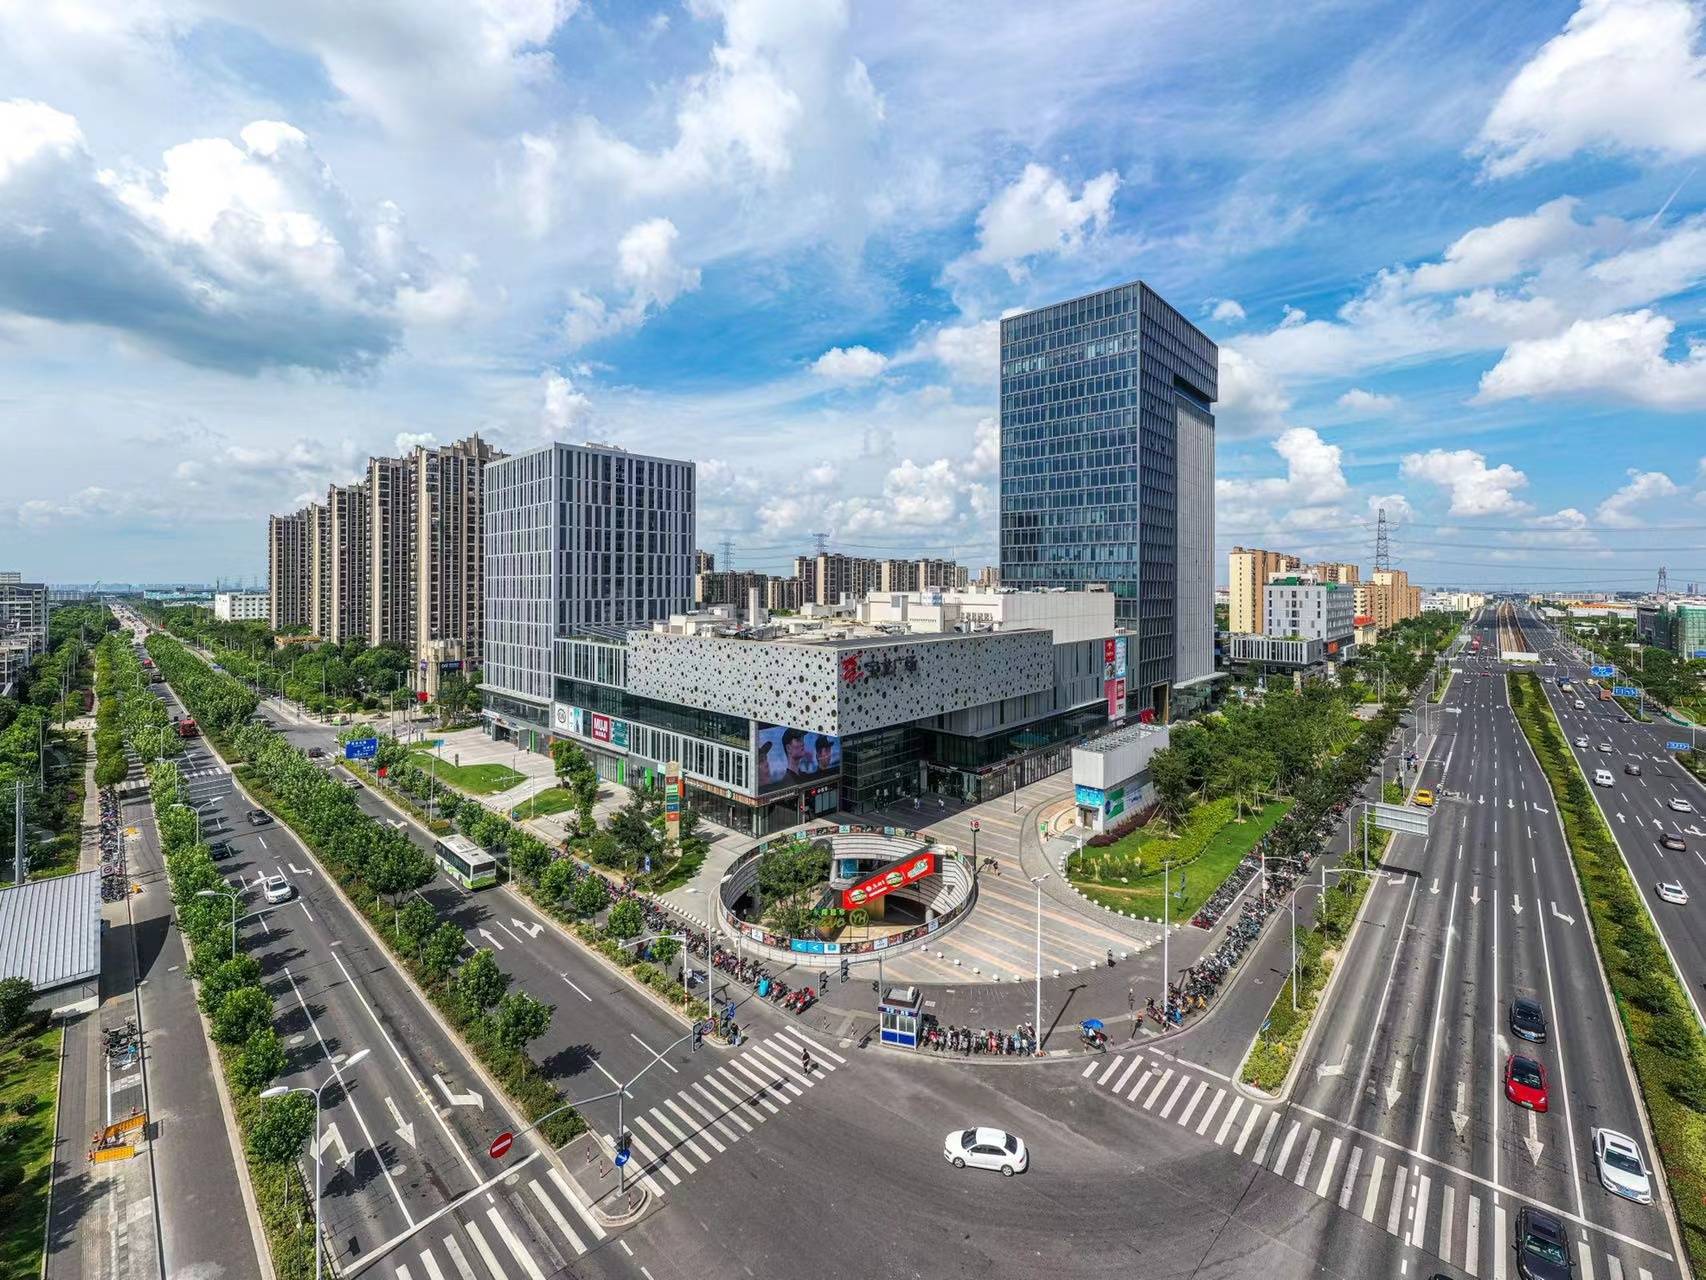 上海曹路宝龙广场图片